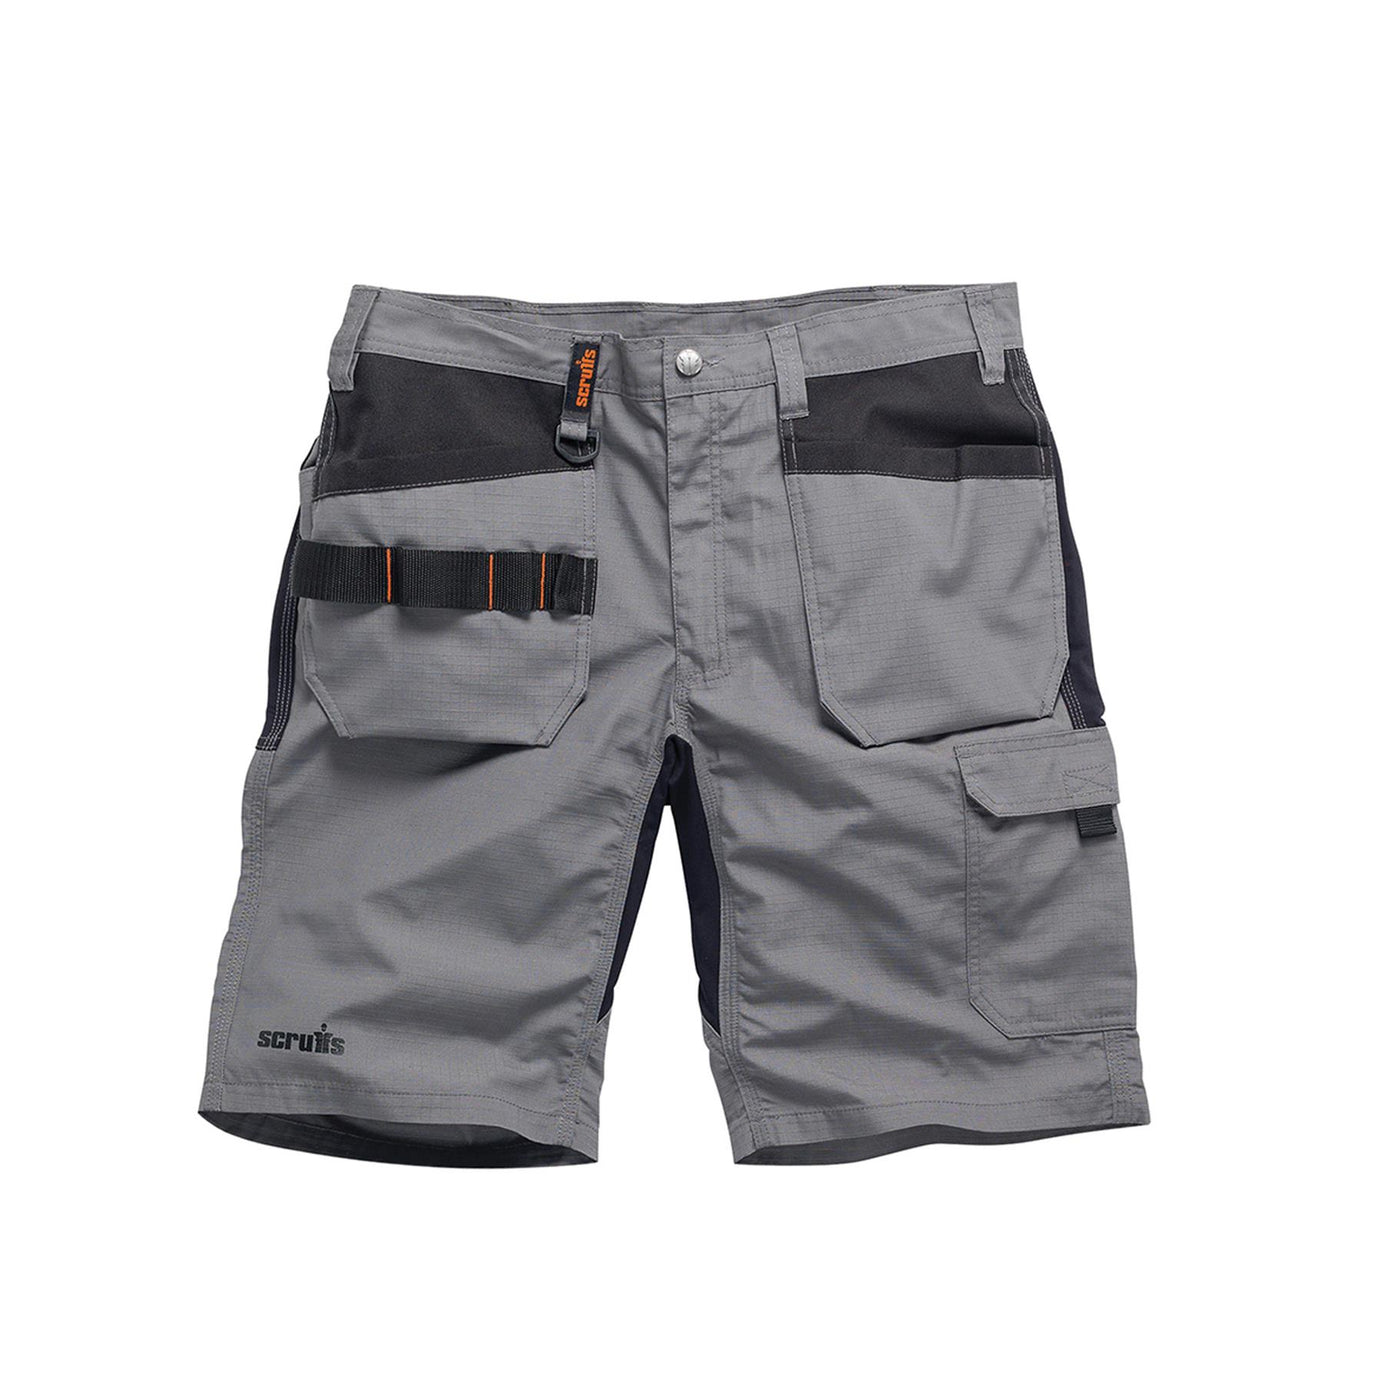 Scruffs Flex Holster Shorts Cargo Combat Pockets Hard Wearing Graphite 40 Waist